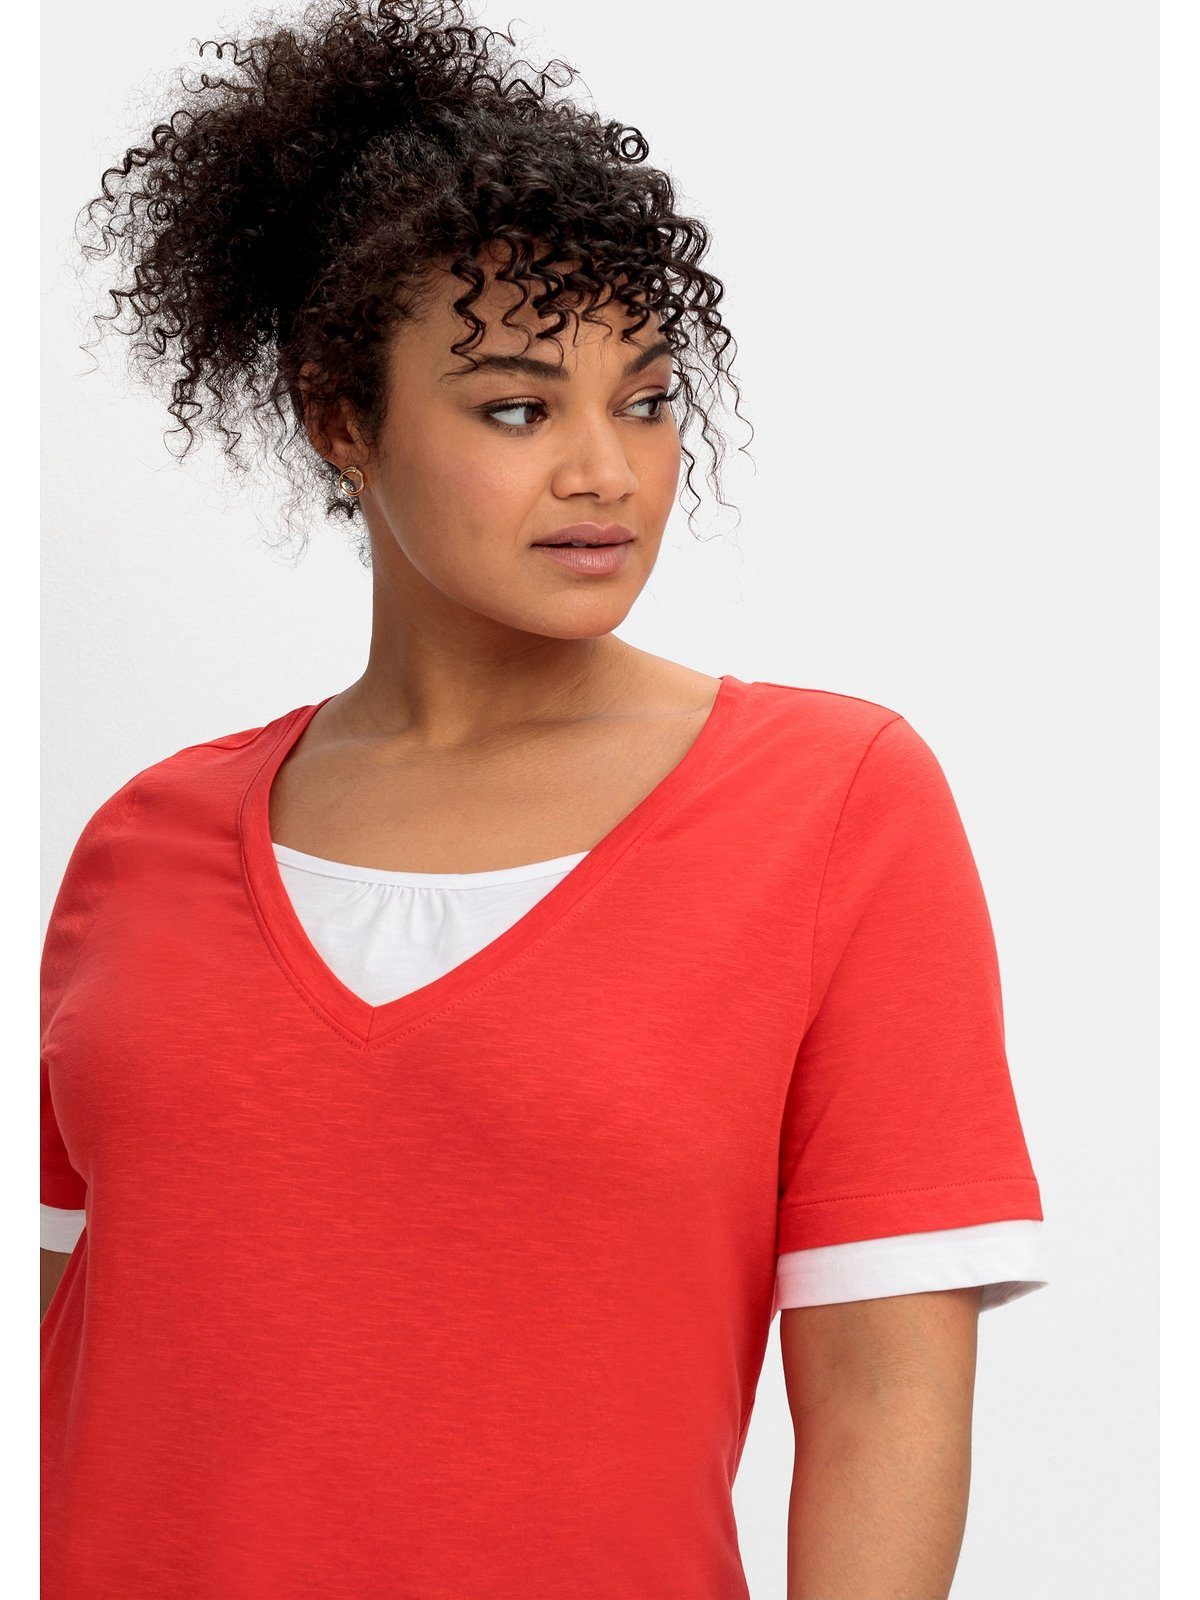 mit Größen Große 2-in-1-Optik, Sheego rot-weiß 2-in-1-Shirt in V-Ausschnitt